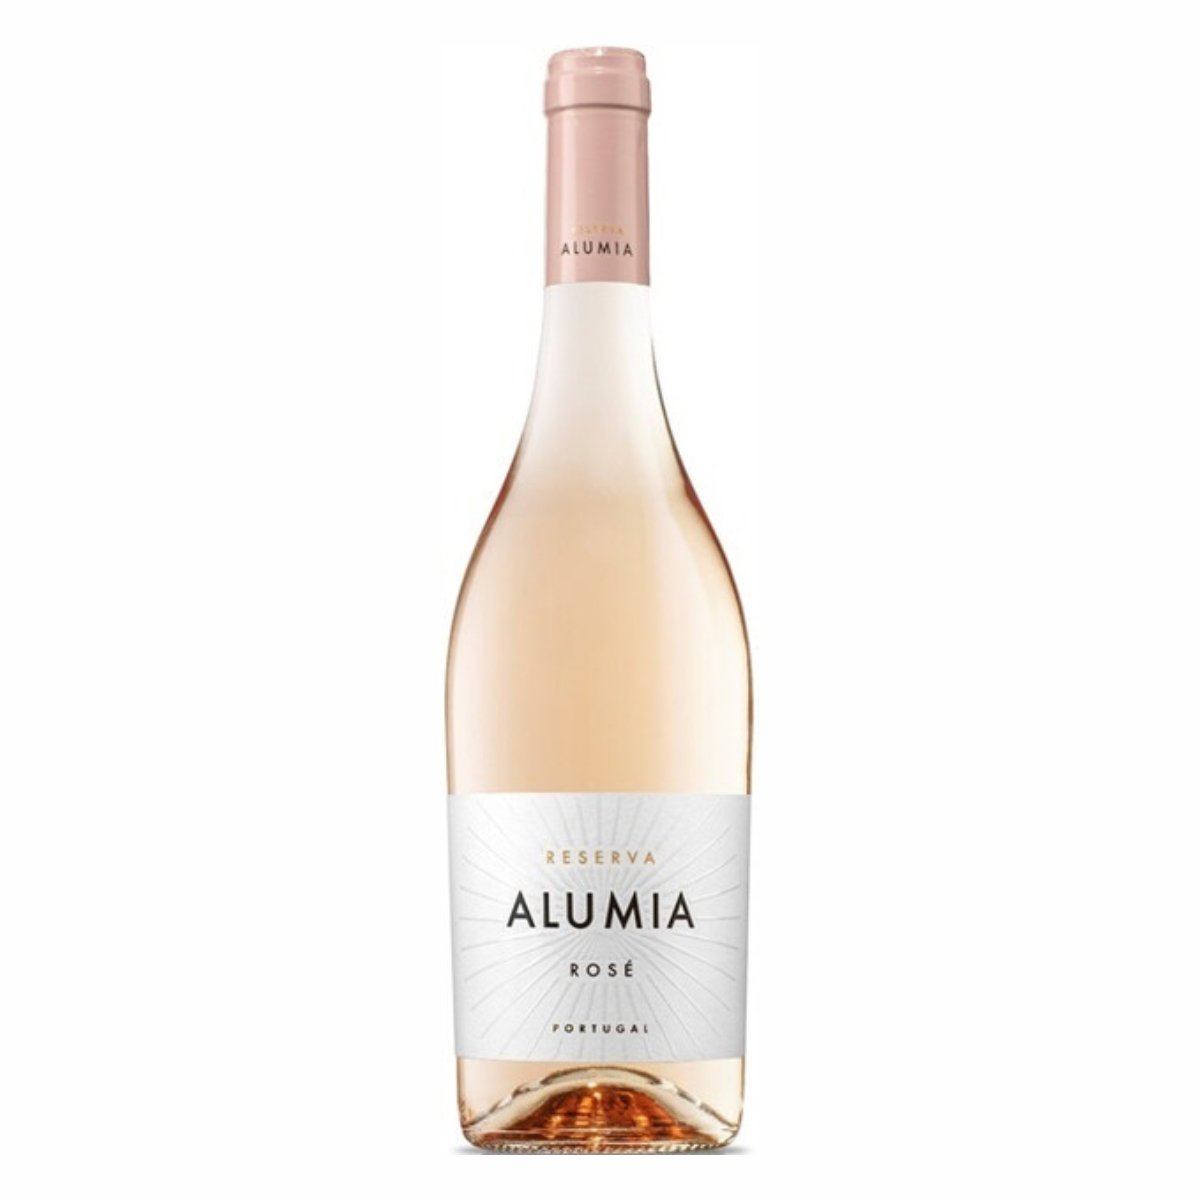 Вина португалии розовое полусухое. Вино Alumia reserva. Вино Бейра интериор Алюмия резерва. Алюмия резерва док Бейра интериор. Вино Alumia reserva Rose.